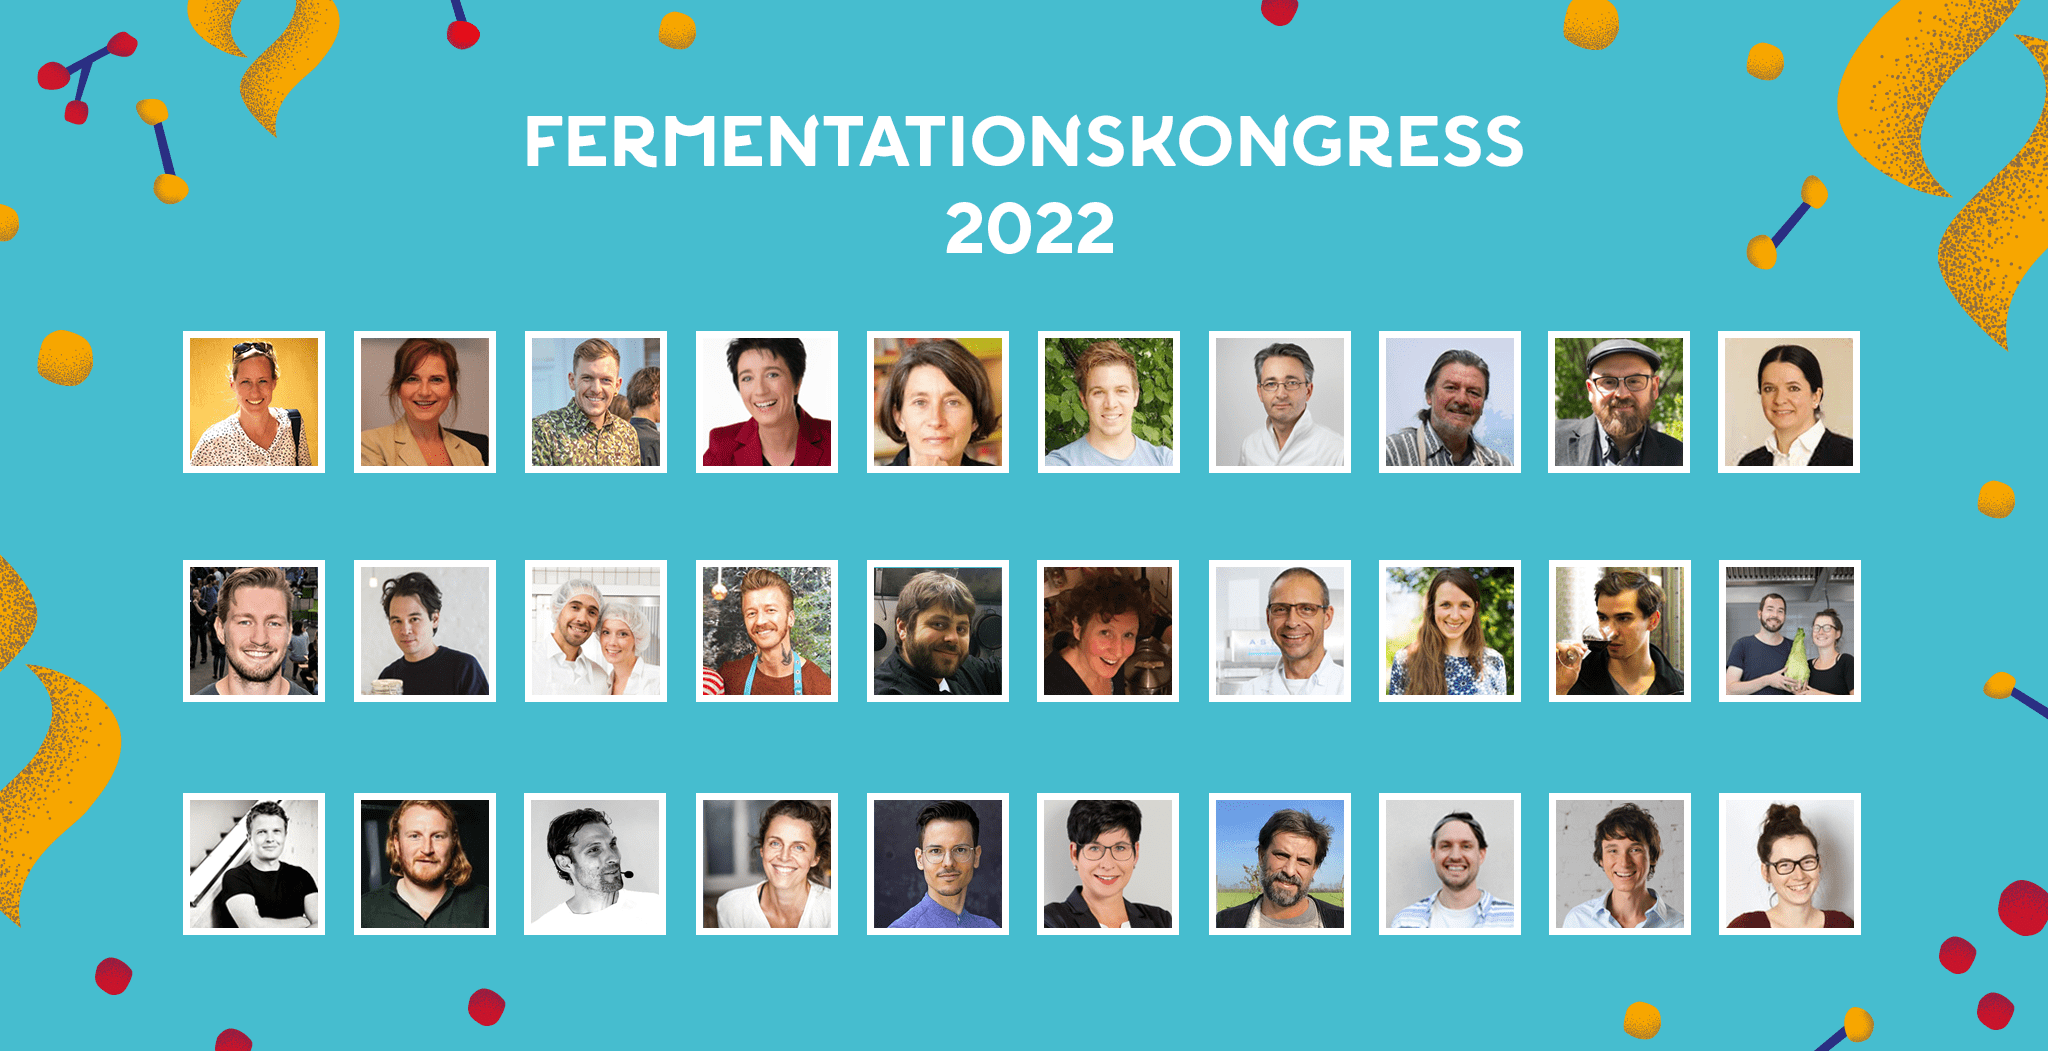 Fermentationskongress 2022